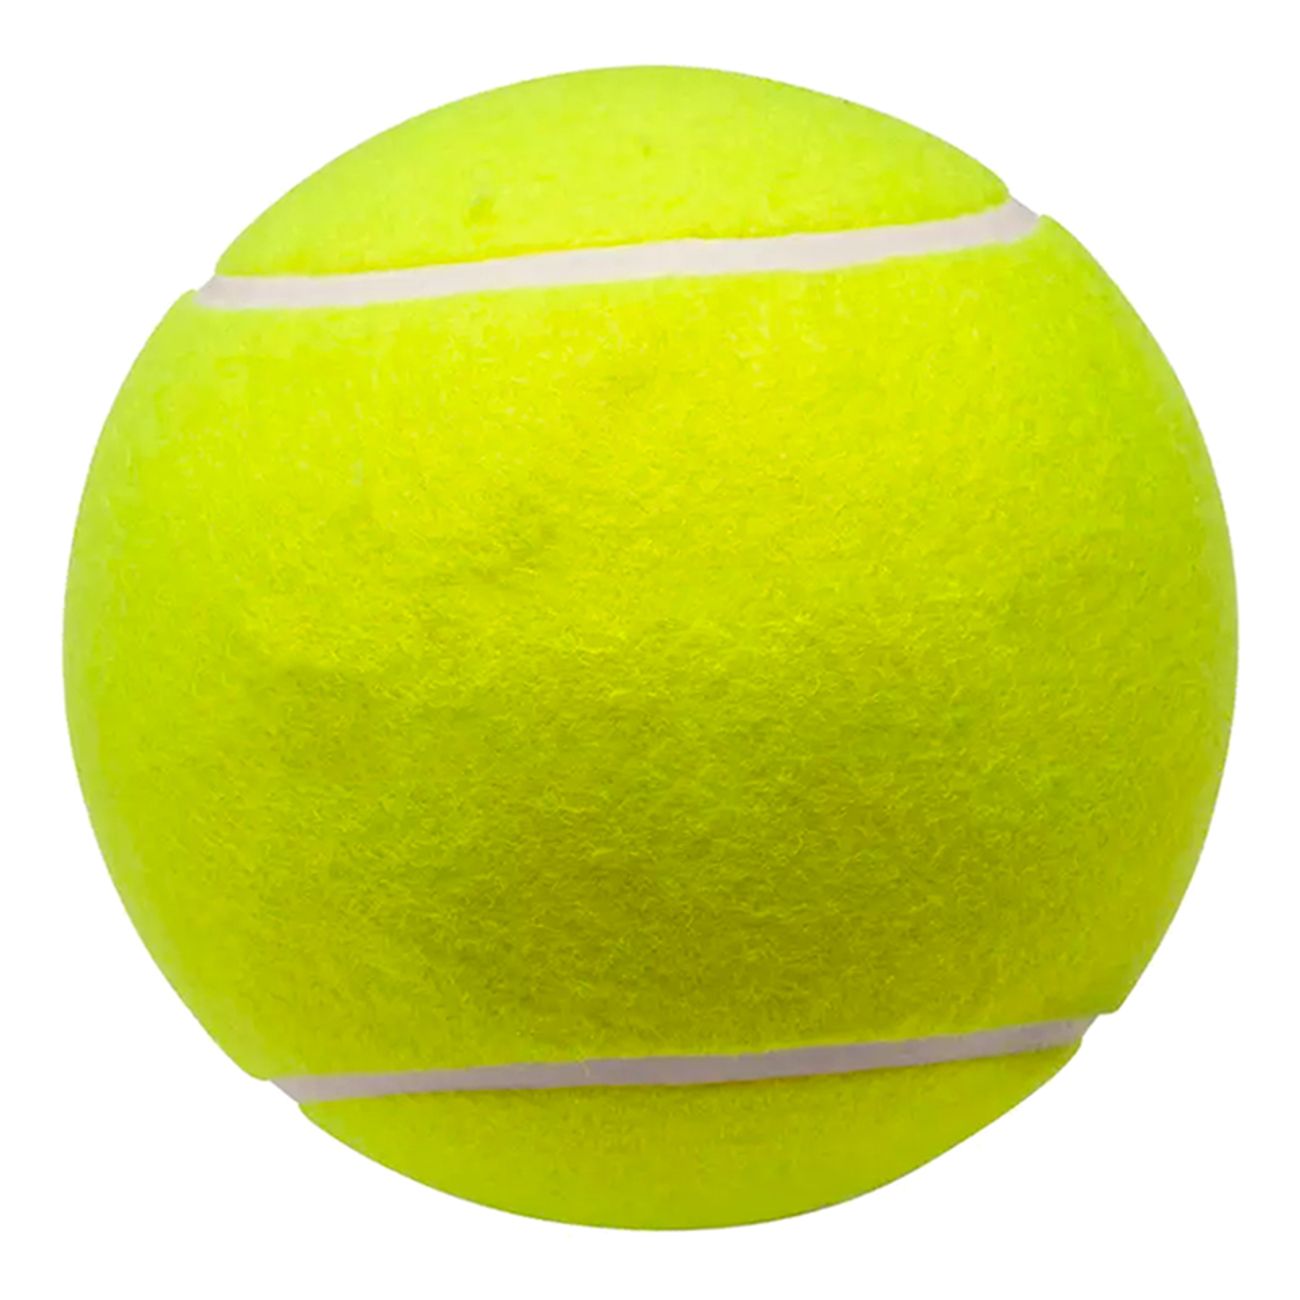 gigantisk-tennisboll-82178-2